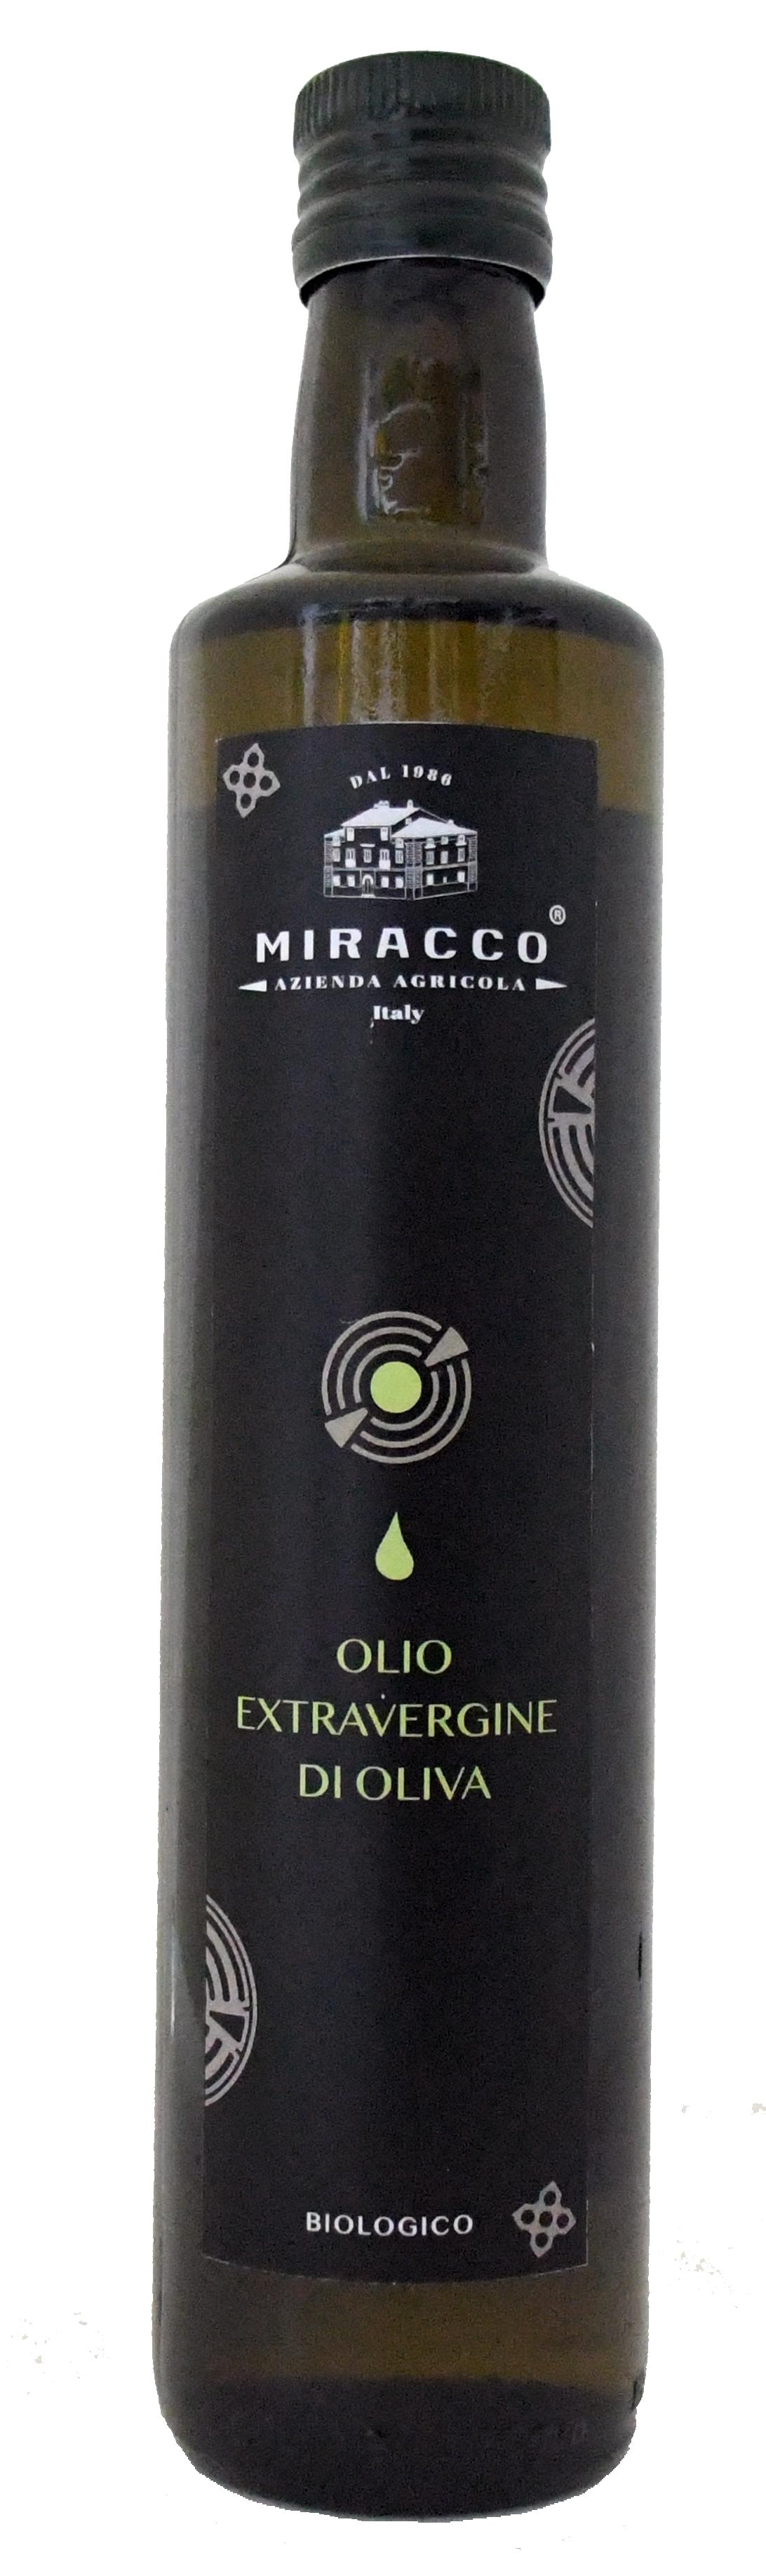 Olio Extravergine di Oliva Italiano - Biologico Prodotto in Calabria - Estratto a Freddo -  Bottigli